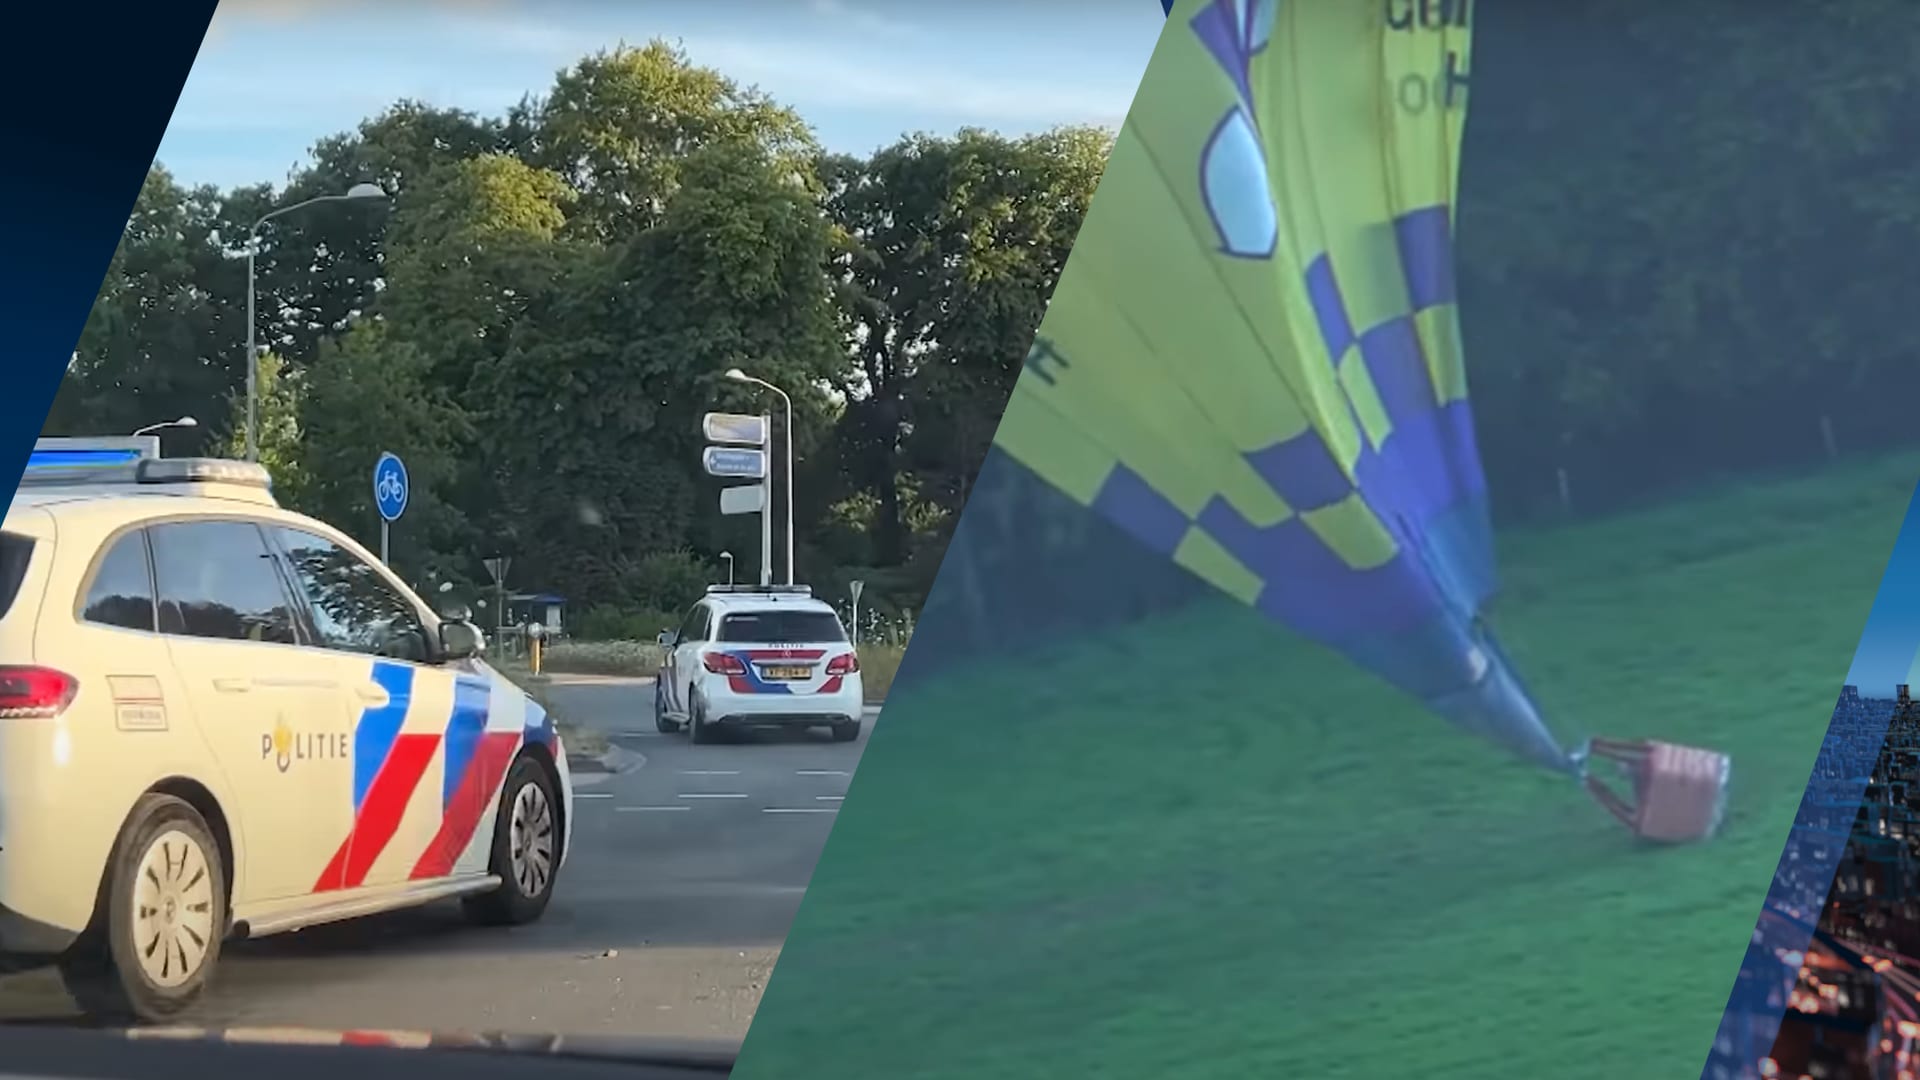 Politie deelt spectaculaire bodycambeelden van redding neerstortende luchtballon